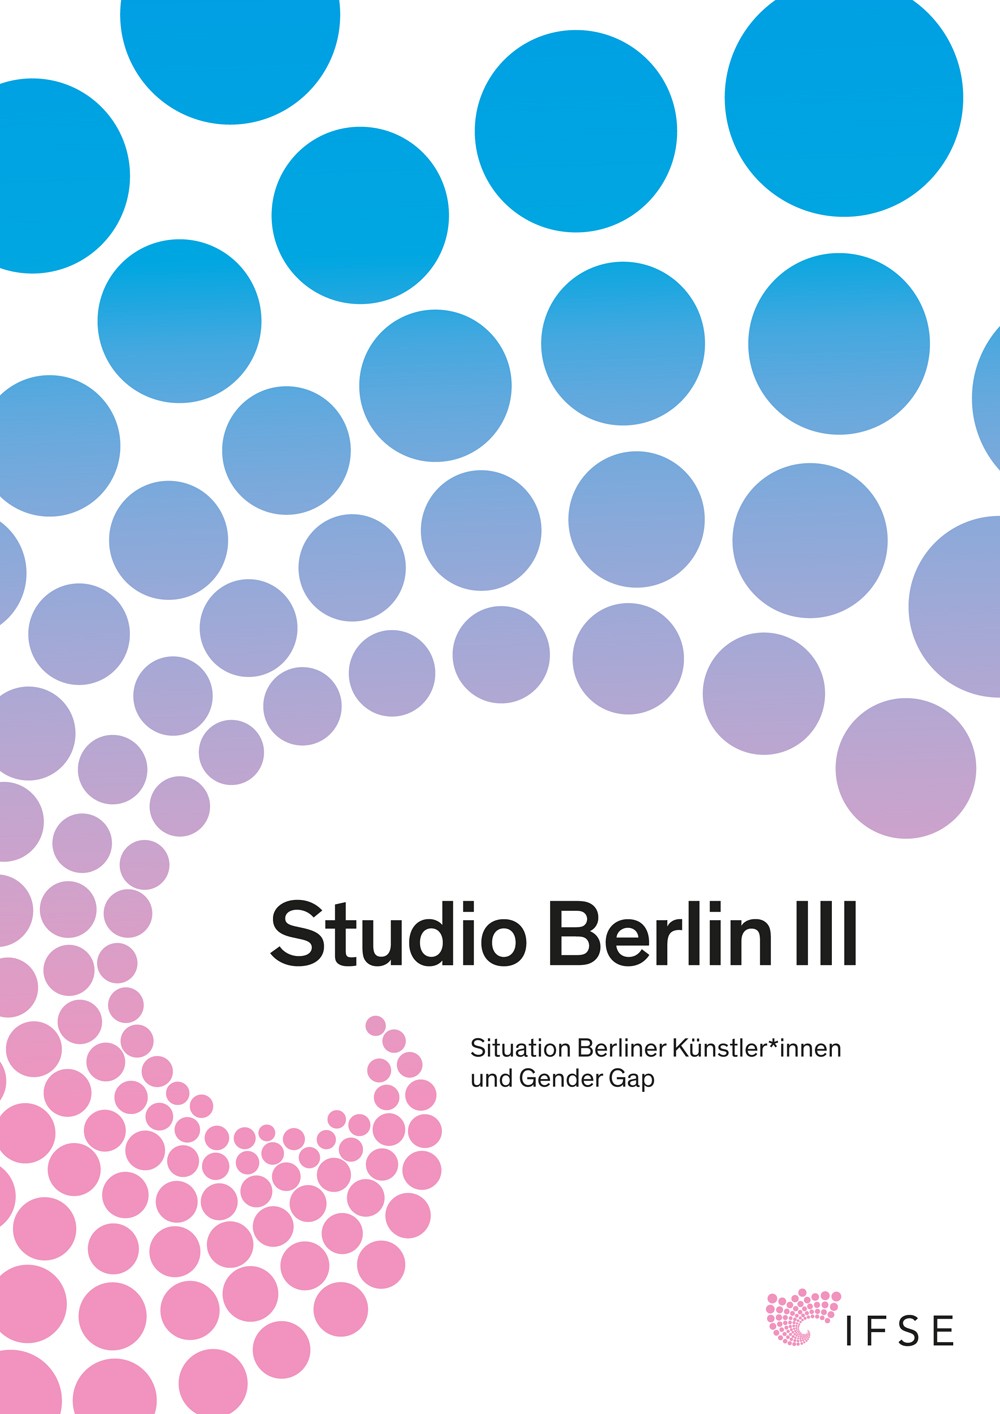 Studio Berlin III Situation Berliner Künstler*innen und Gender Gap 2018